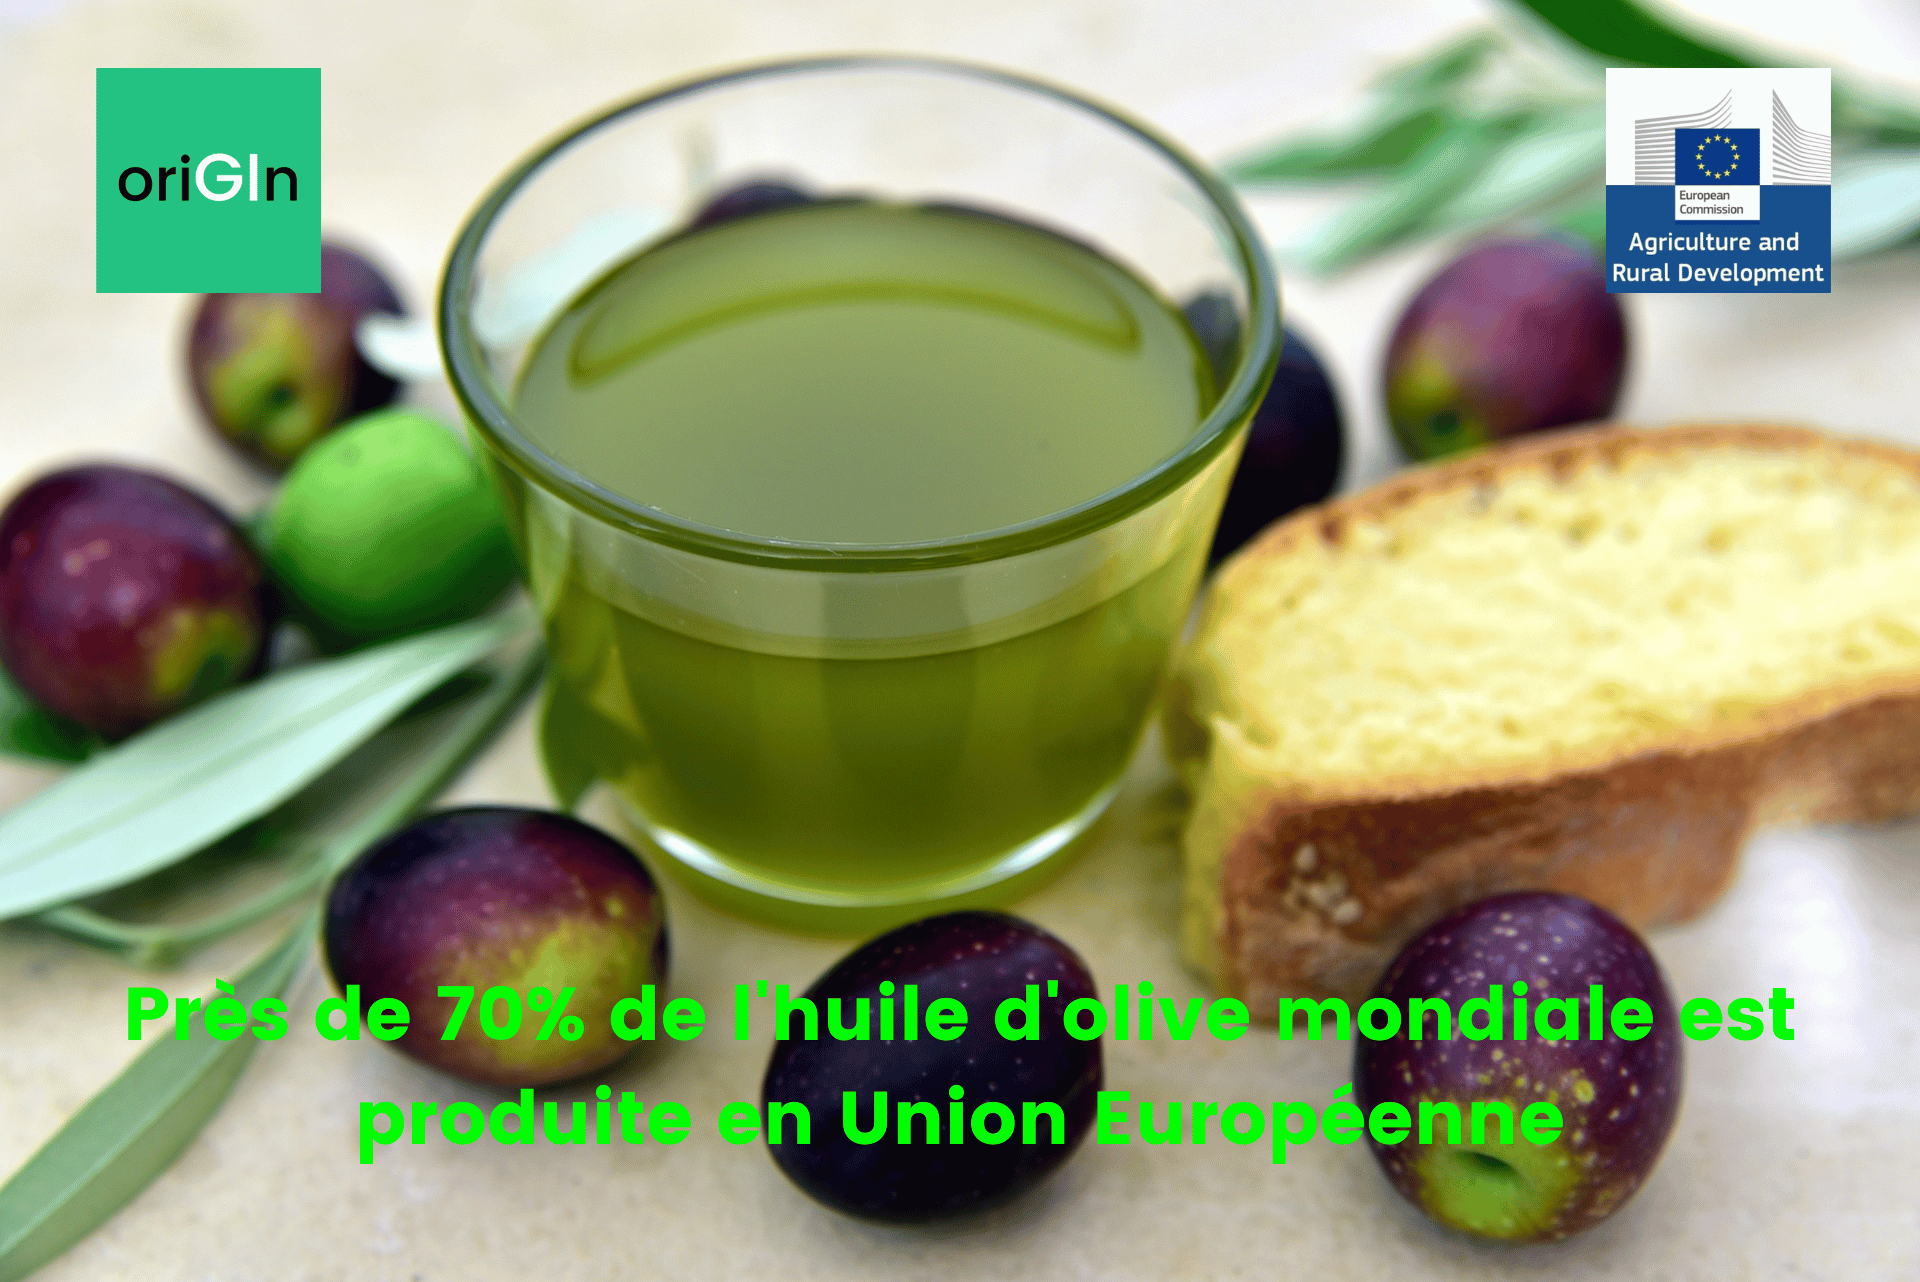 Production d'huiles d'olive en Union Européenne